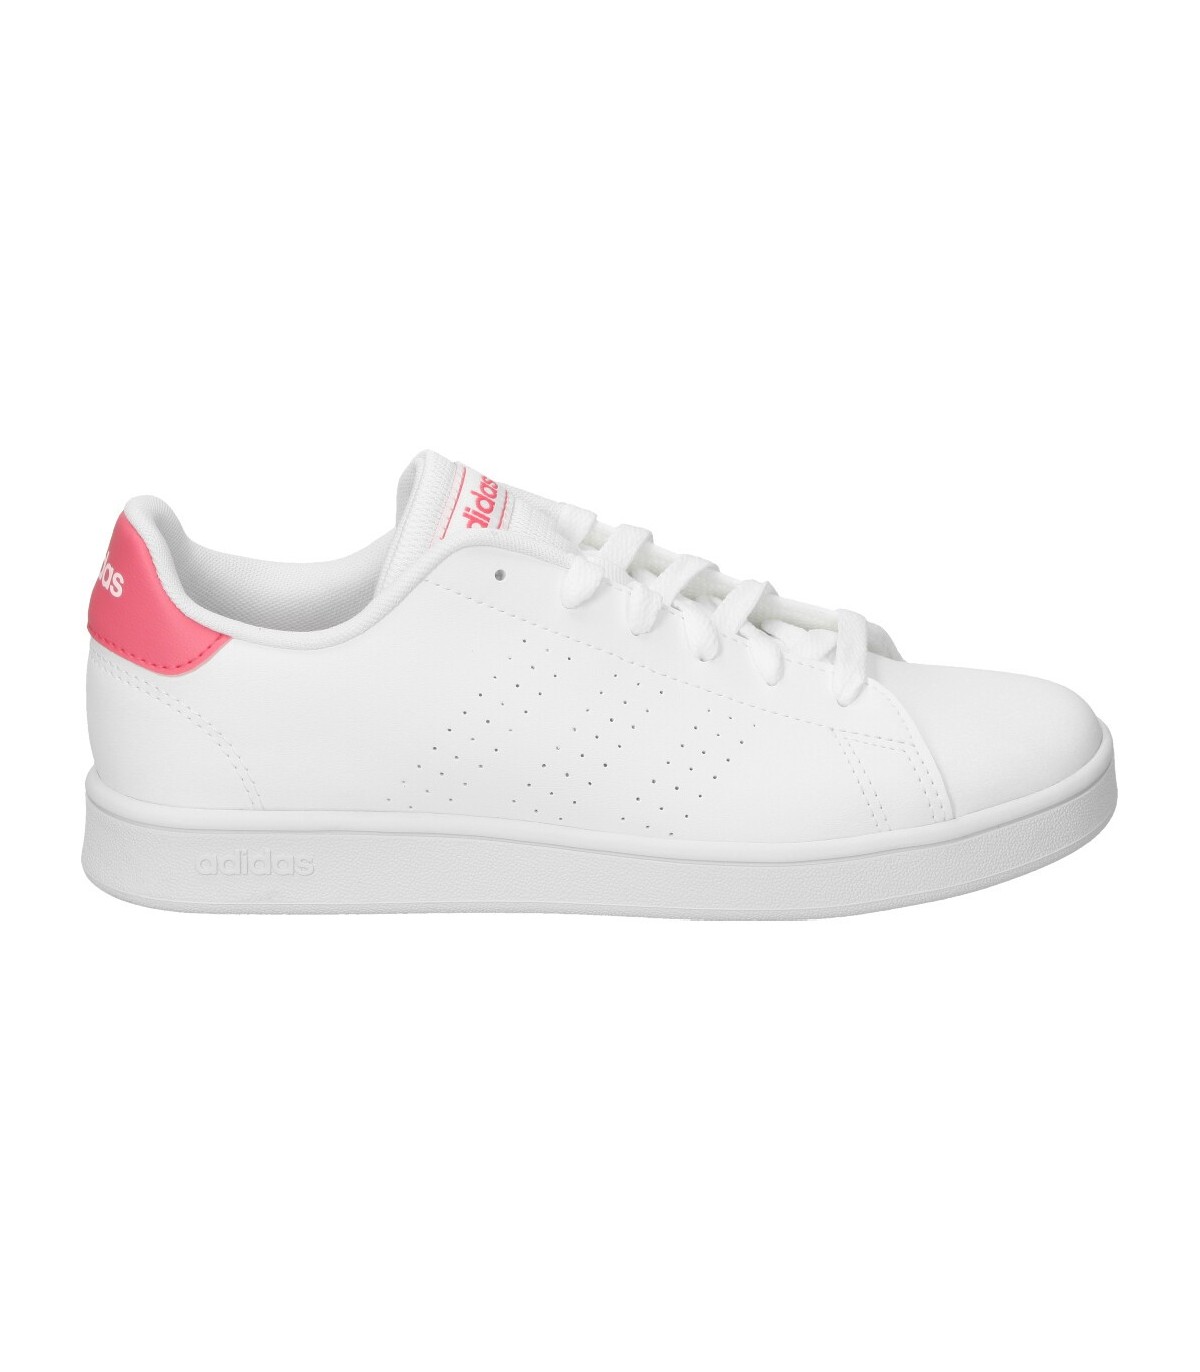 Adidas Advantage rosa ef0211 deportivas para mujer